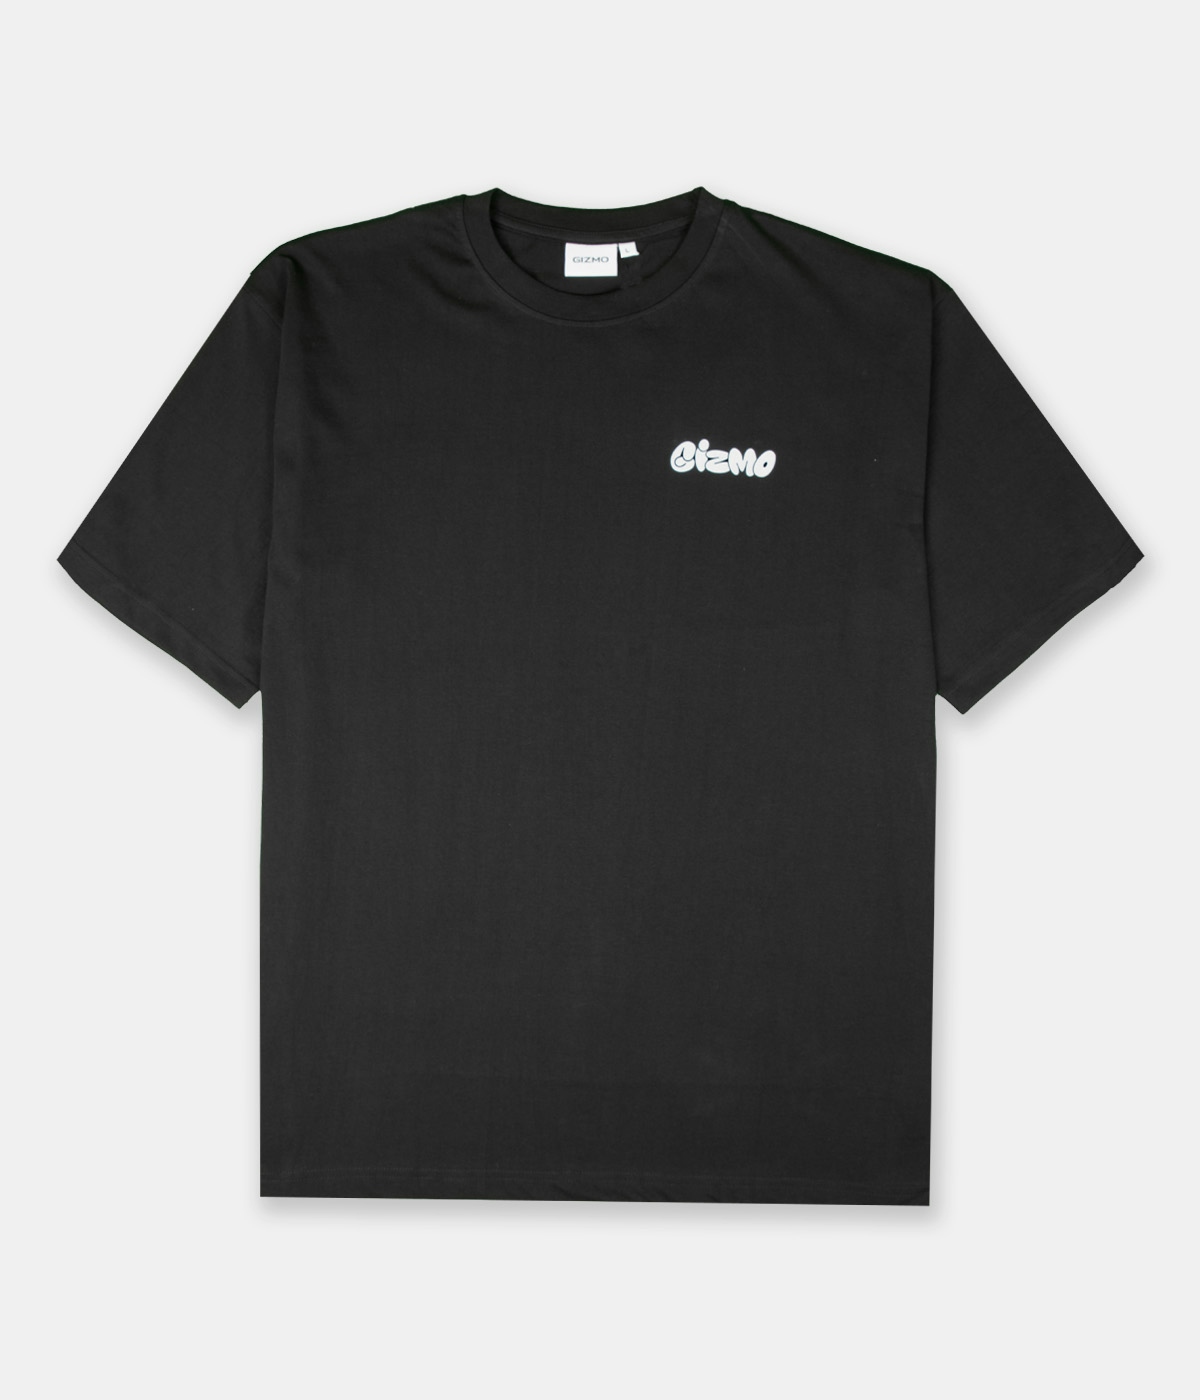 Gizmo Gizmo T-shirt Small Graf Black